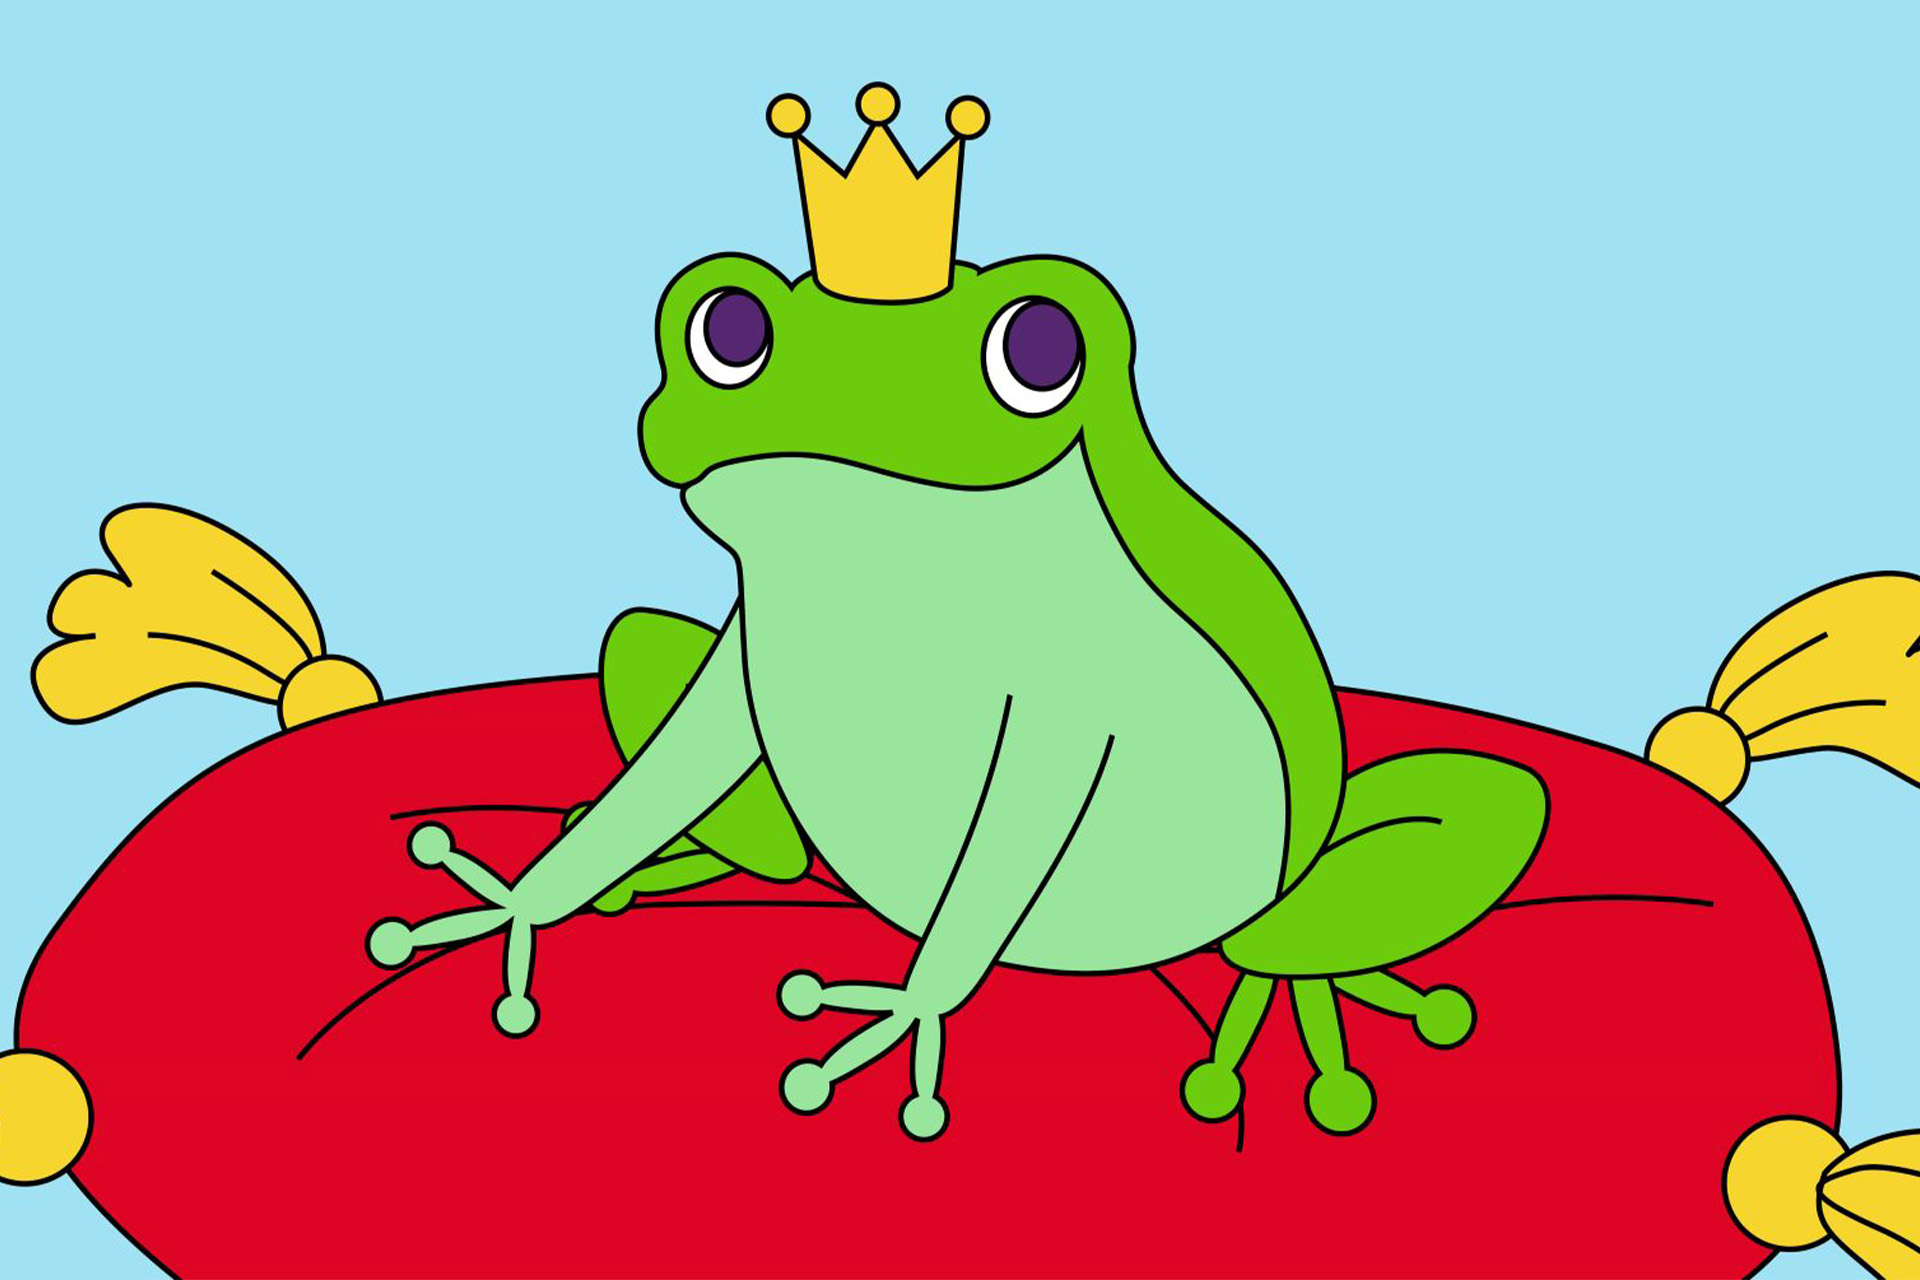 En tecknad groda med krona på huvudet som sitter på en röd kudde